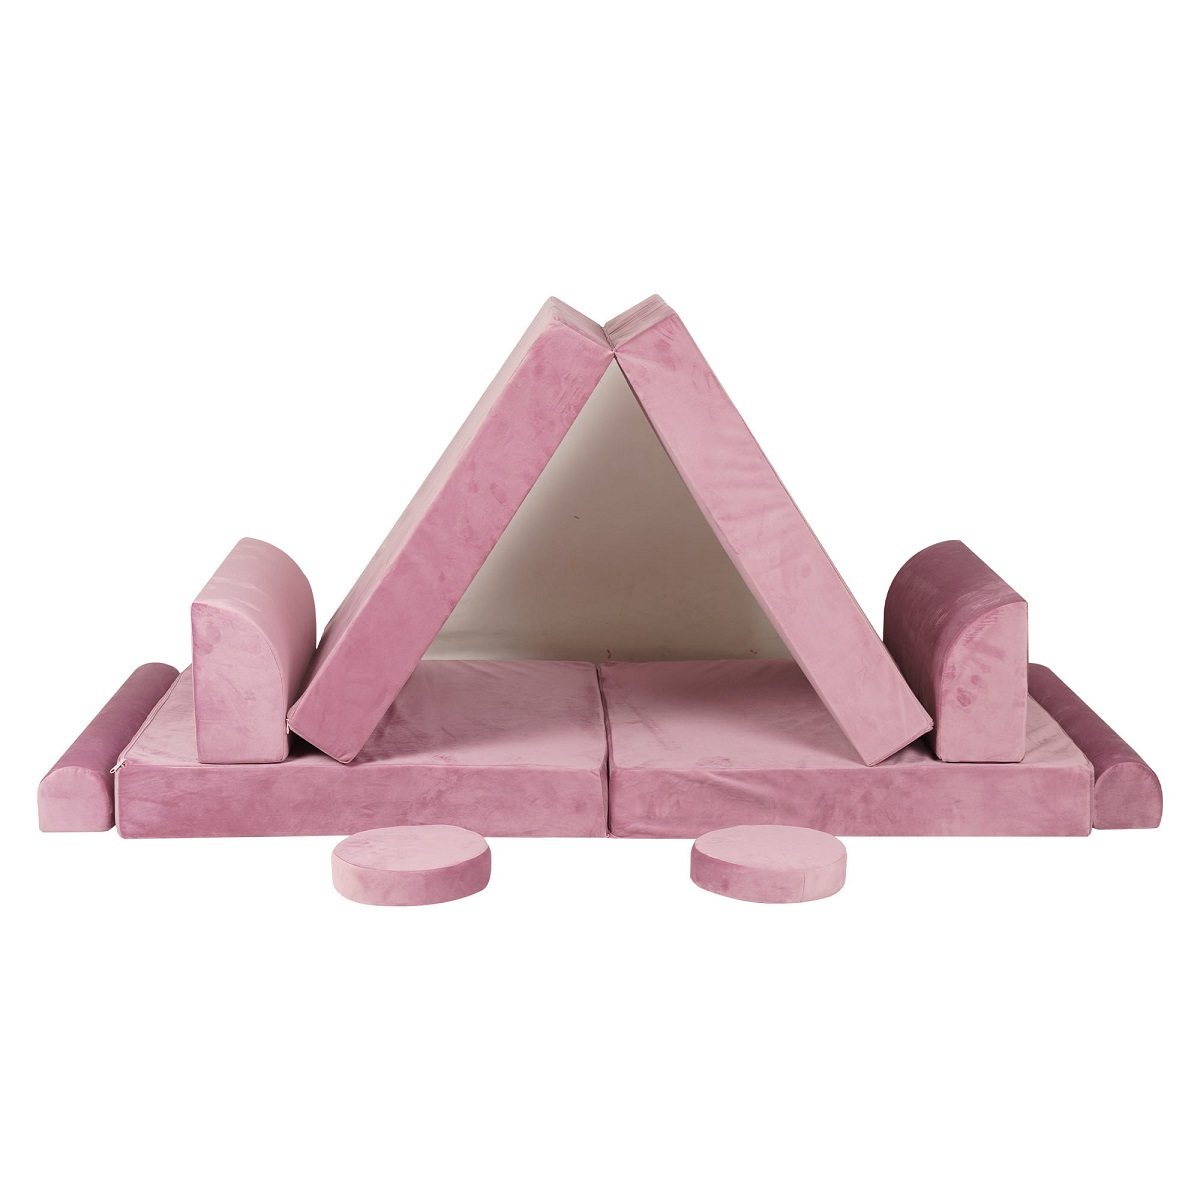 Meow, Byggbar barnsoffa fåtölj madrass, rosa 